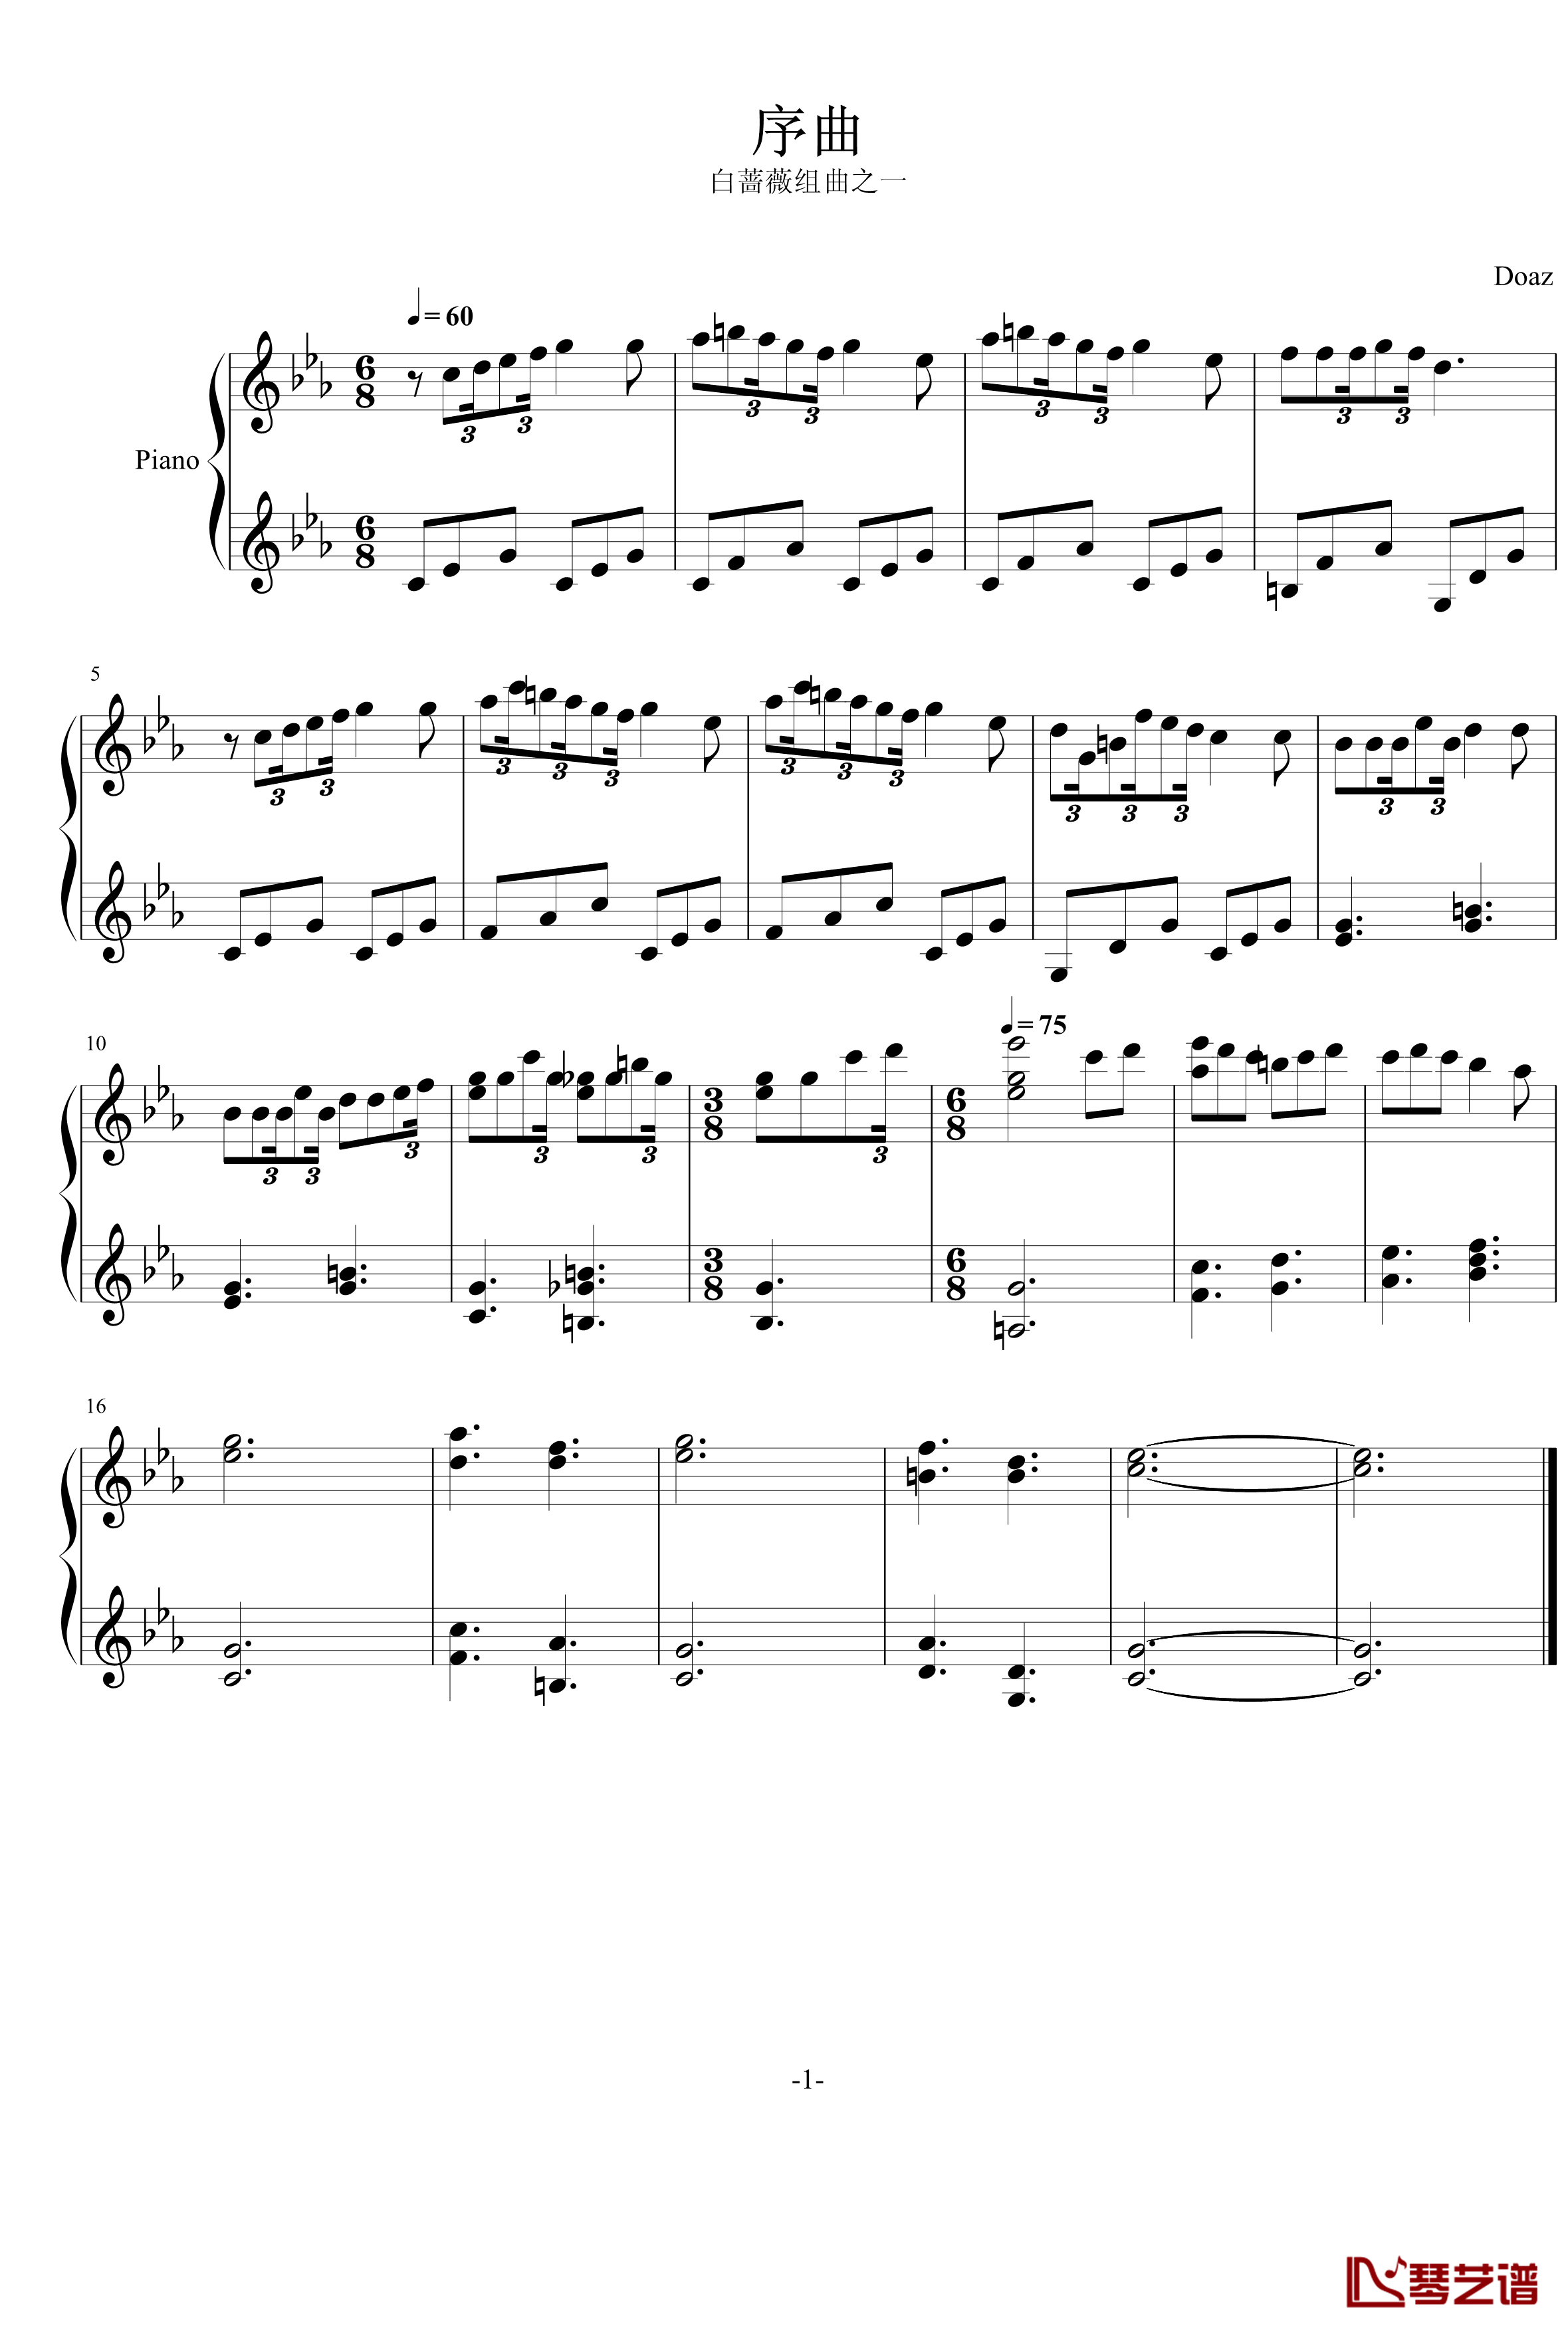 序曲钢琴谱-修改前-aqtq314-白蔷薇组曲1